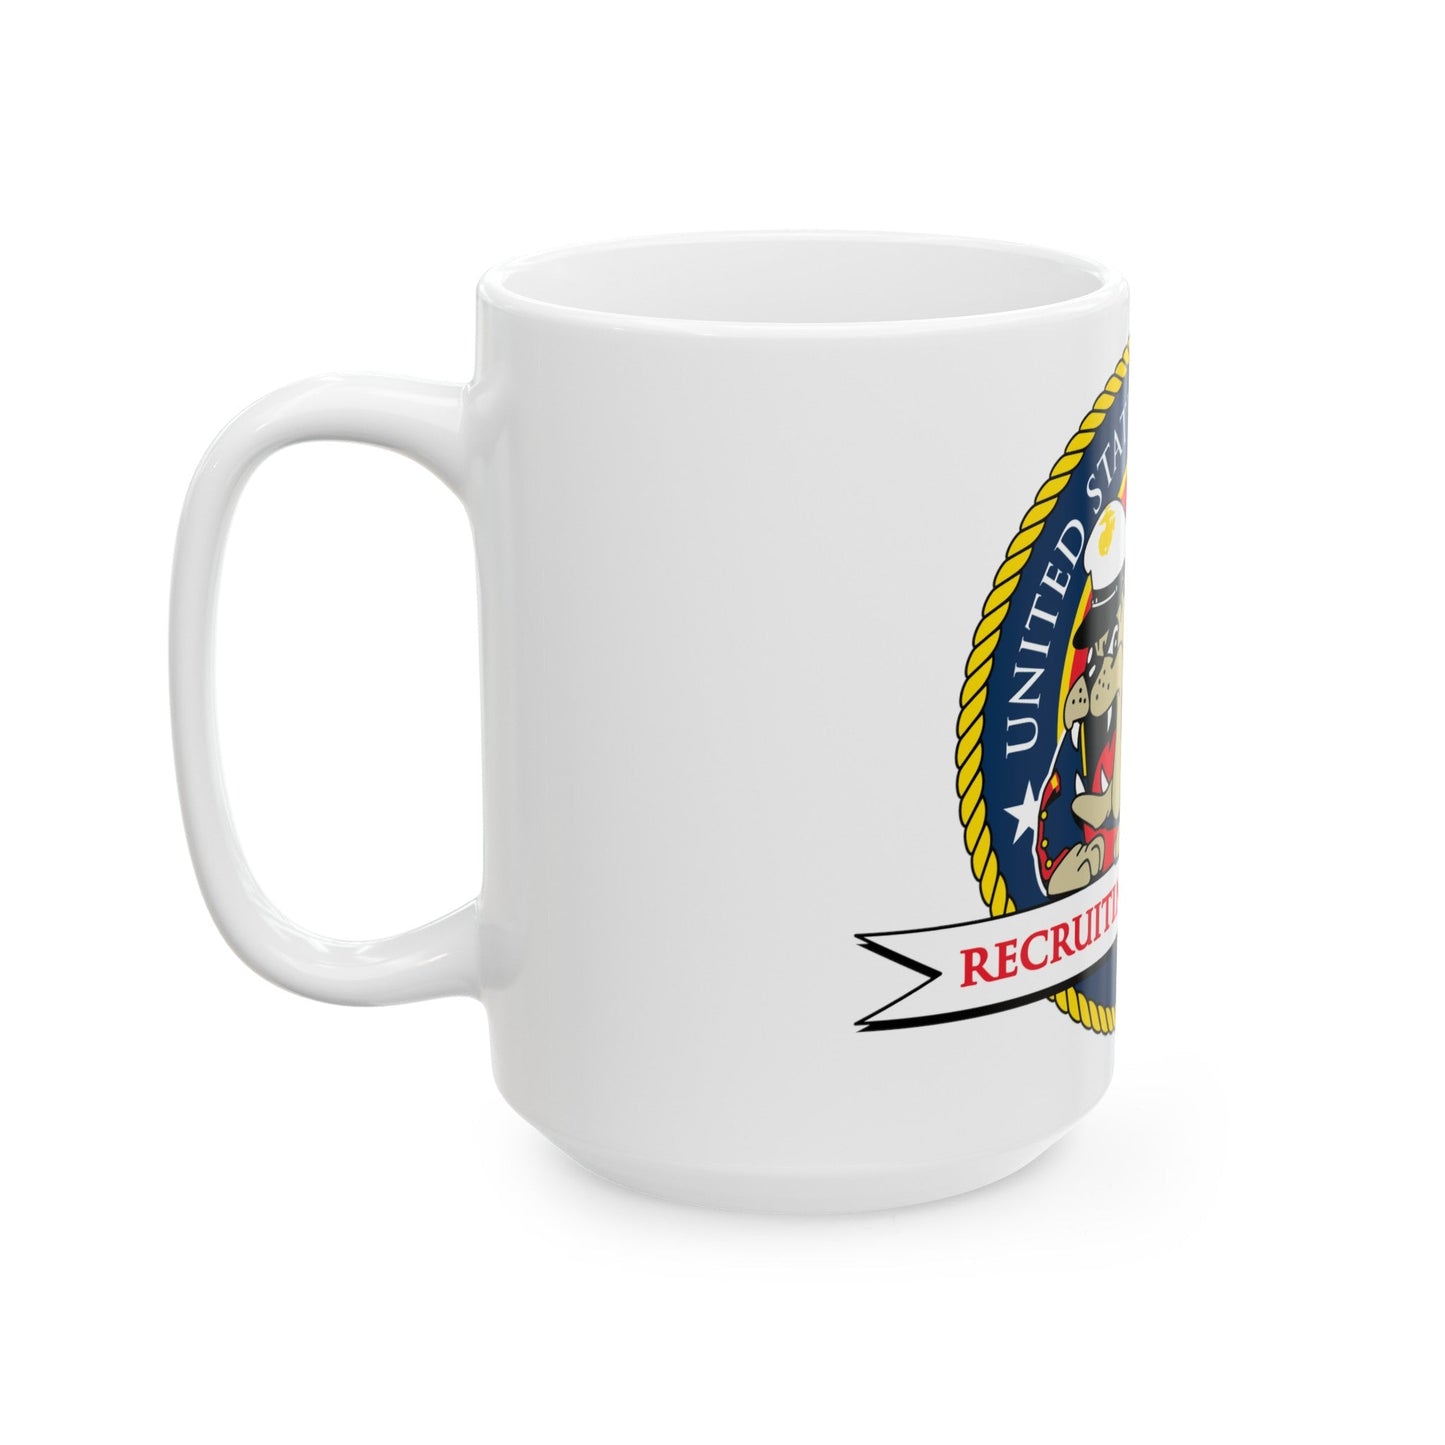 USMC Recruiting Command (USMC) White Coffee Mug